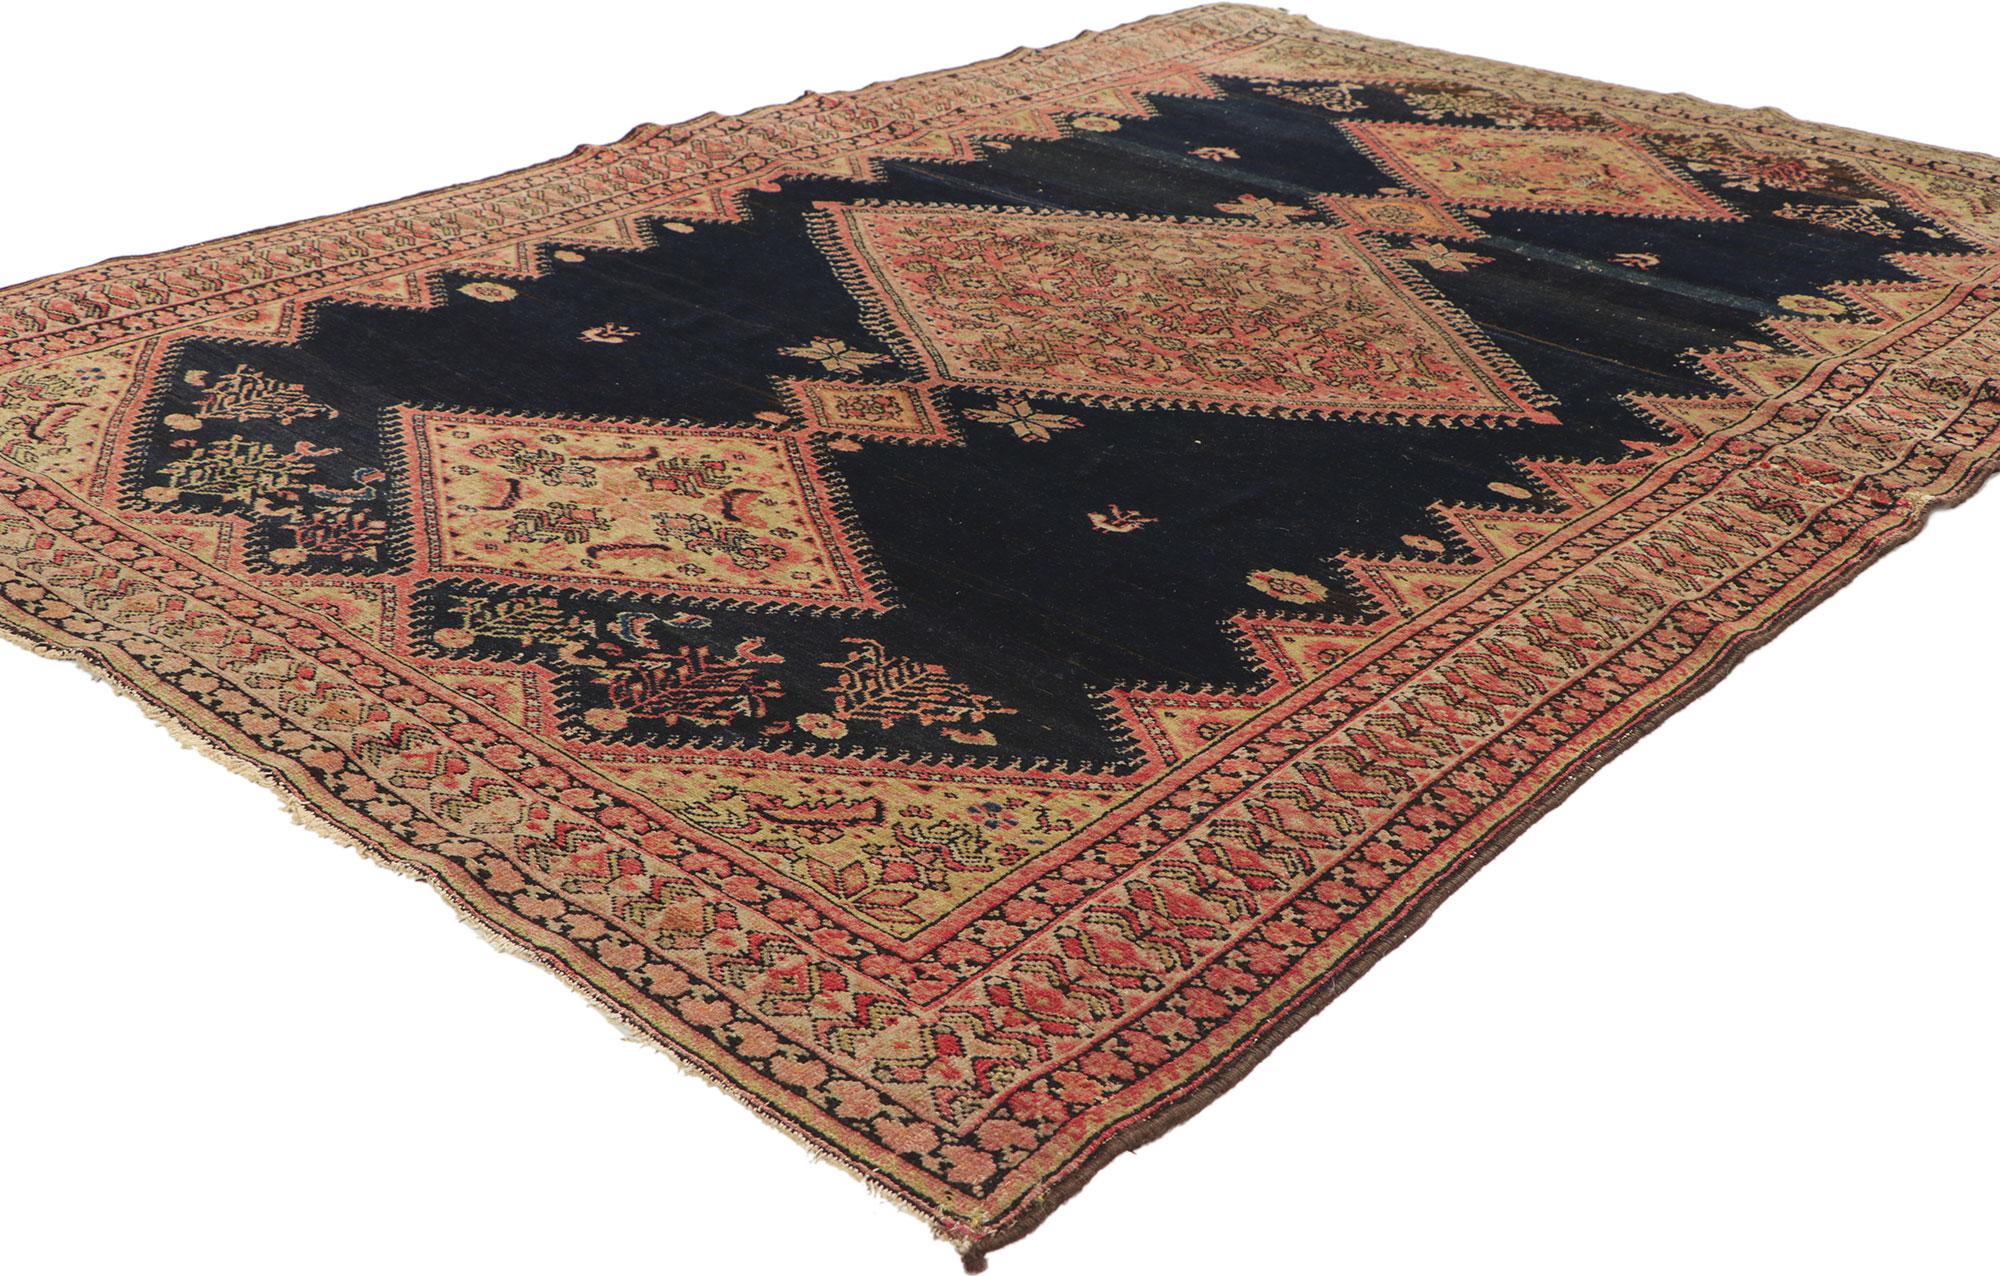 78518 Tapis persan ancien Malayer, 04'01 x 06'03. Emanant d'un style intemporel avec des détails et une texture incroyables, ce tapis antique persan en laine nouée à la main de Malayer est une vision captivante de la beauté tissée. Le design Herati